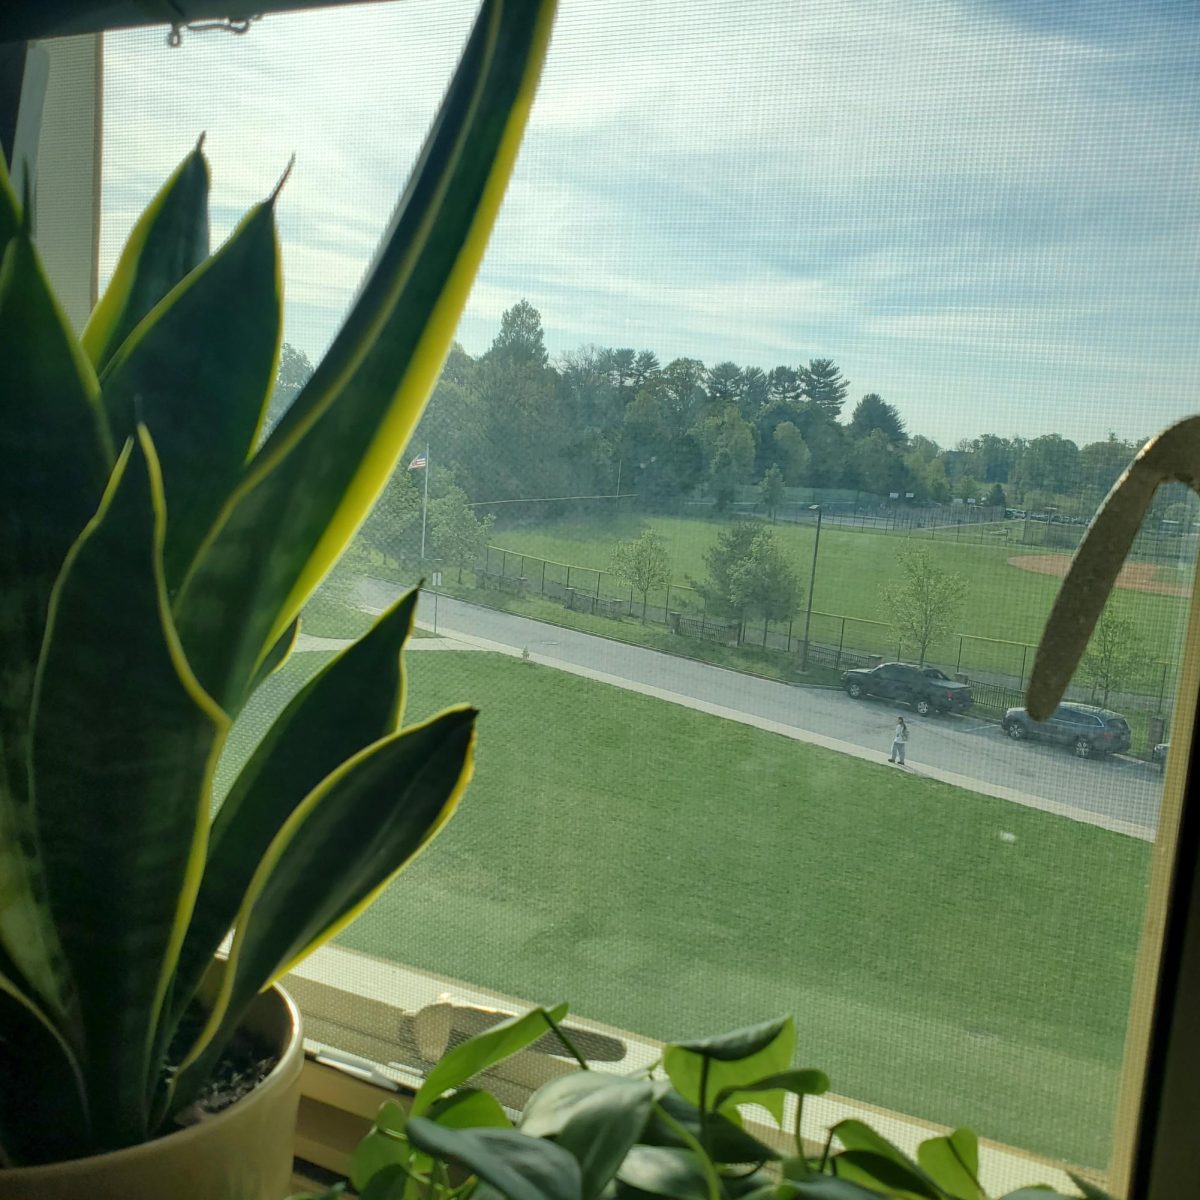 Plant in Window